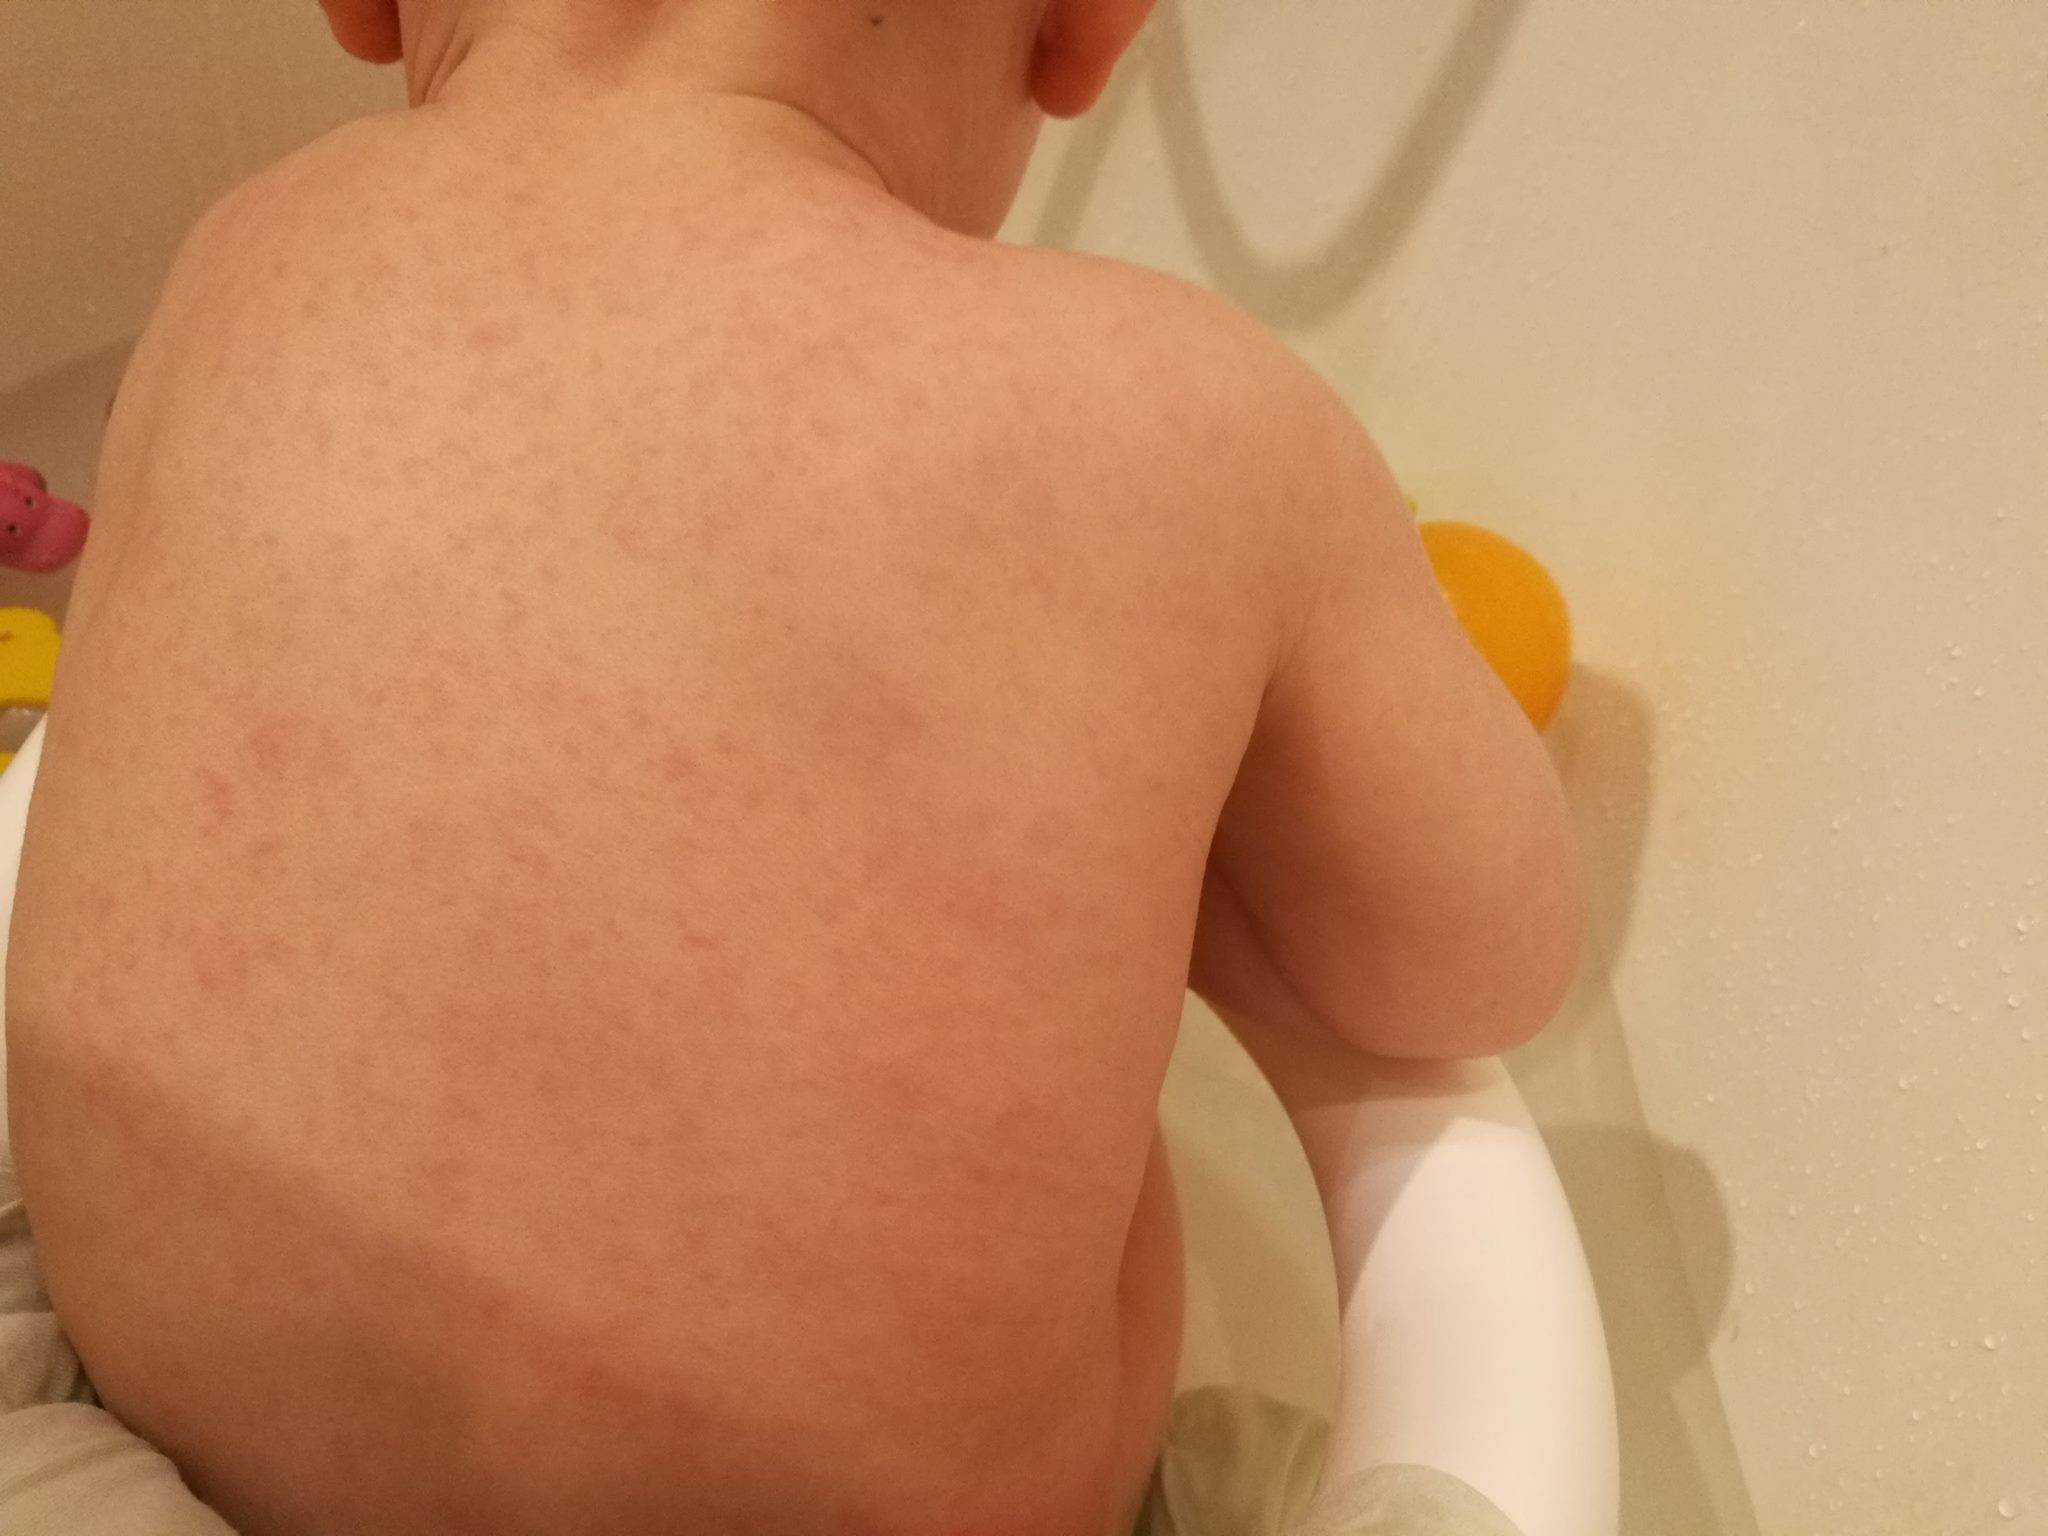 Сыпь на теле у ребенка (64 фото): причины высыпаний по всему телу с пояснениями, бесцветная сыпь после температуры